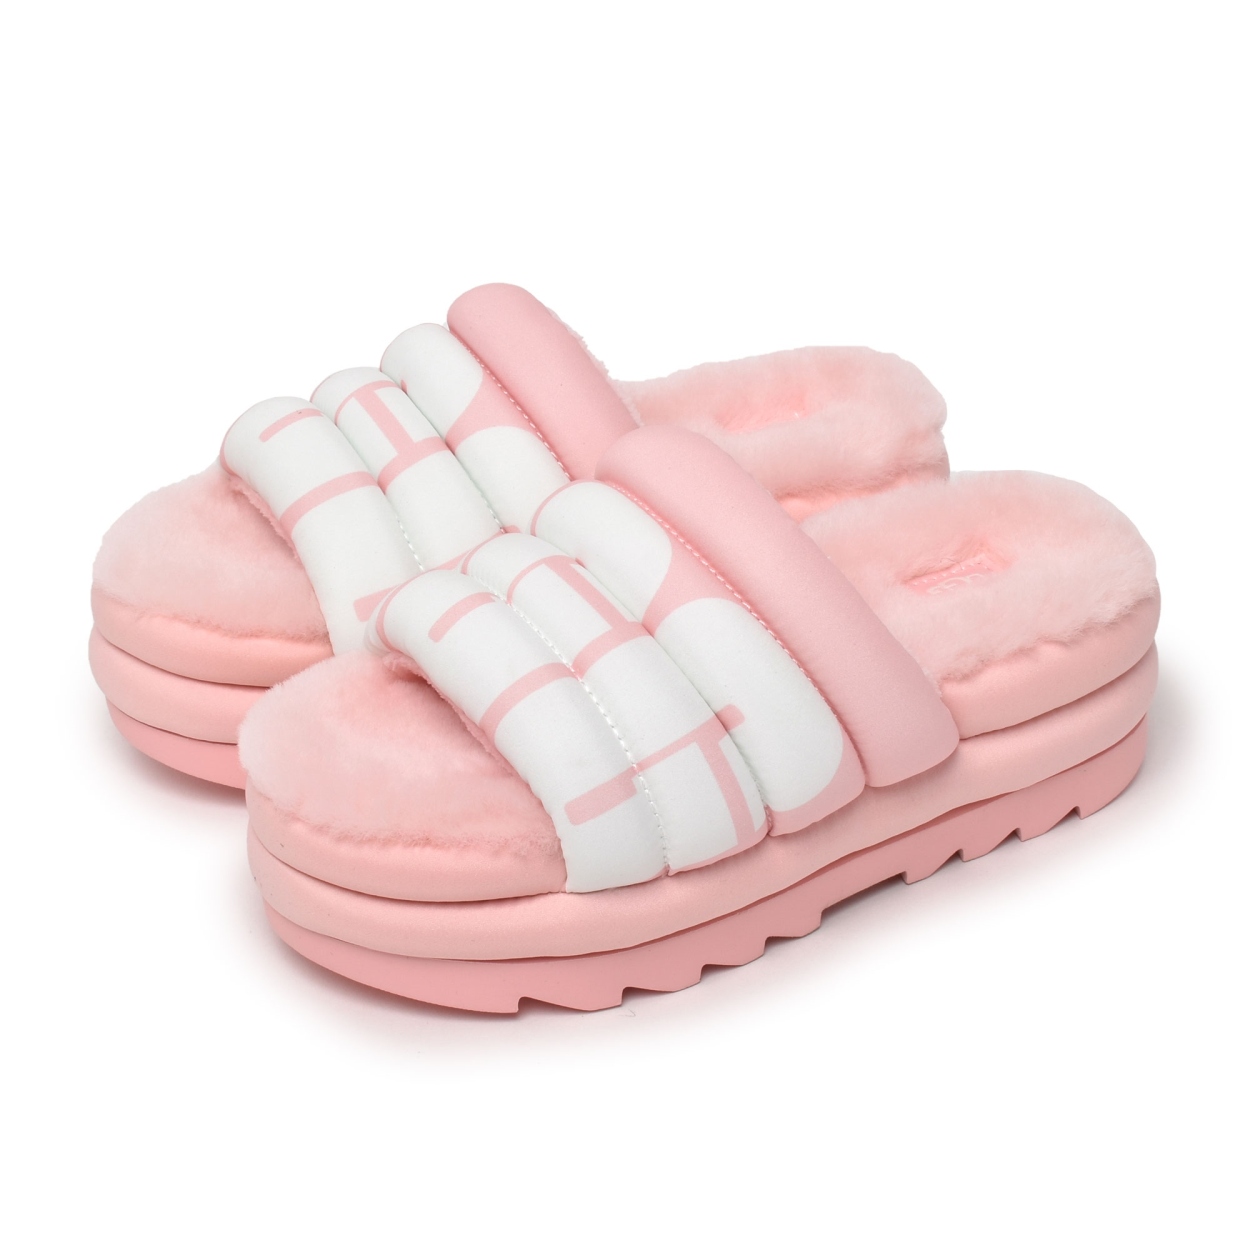 激安通販ショッピング送料無料 アグ サンダル スライド 靴 ロゴ ピンク